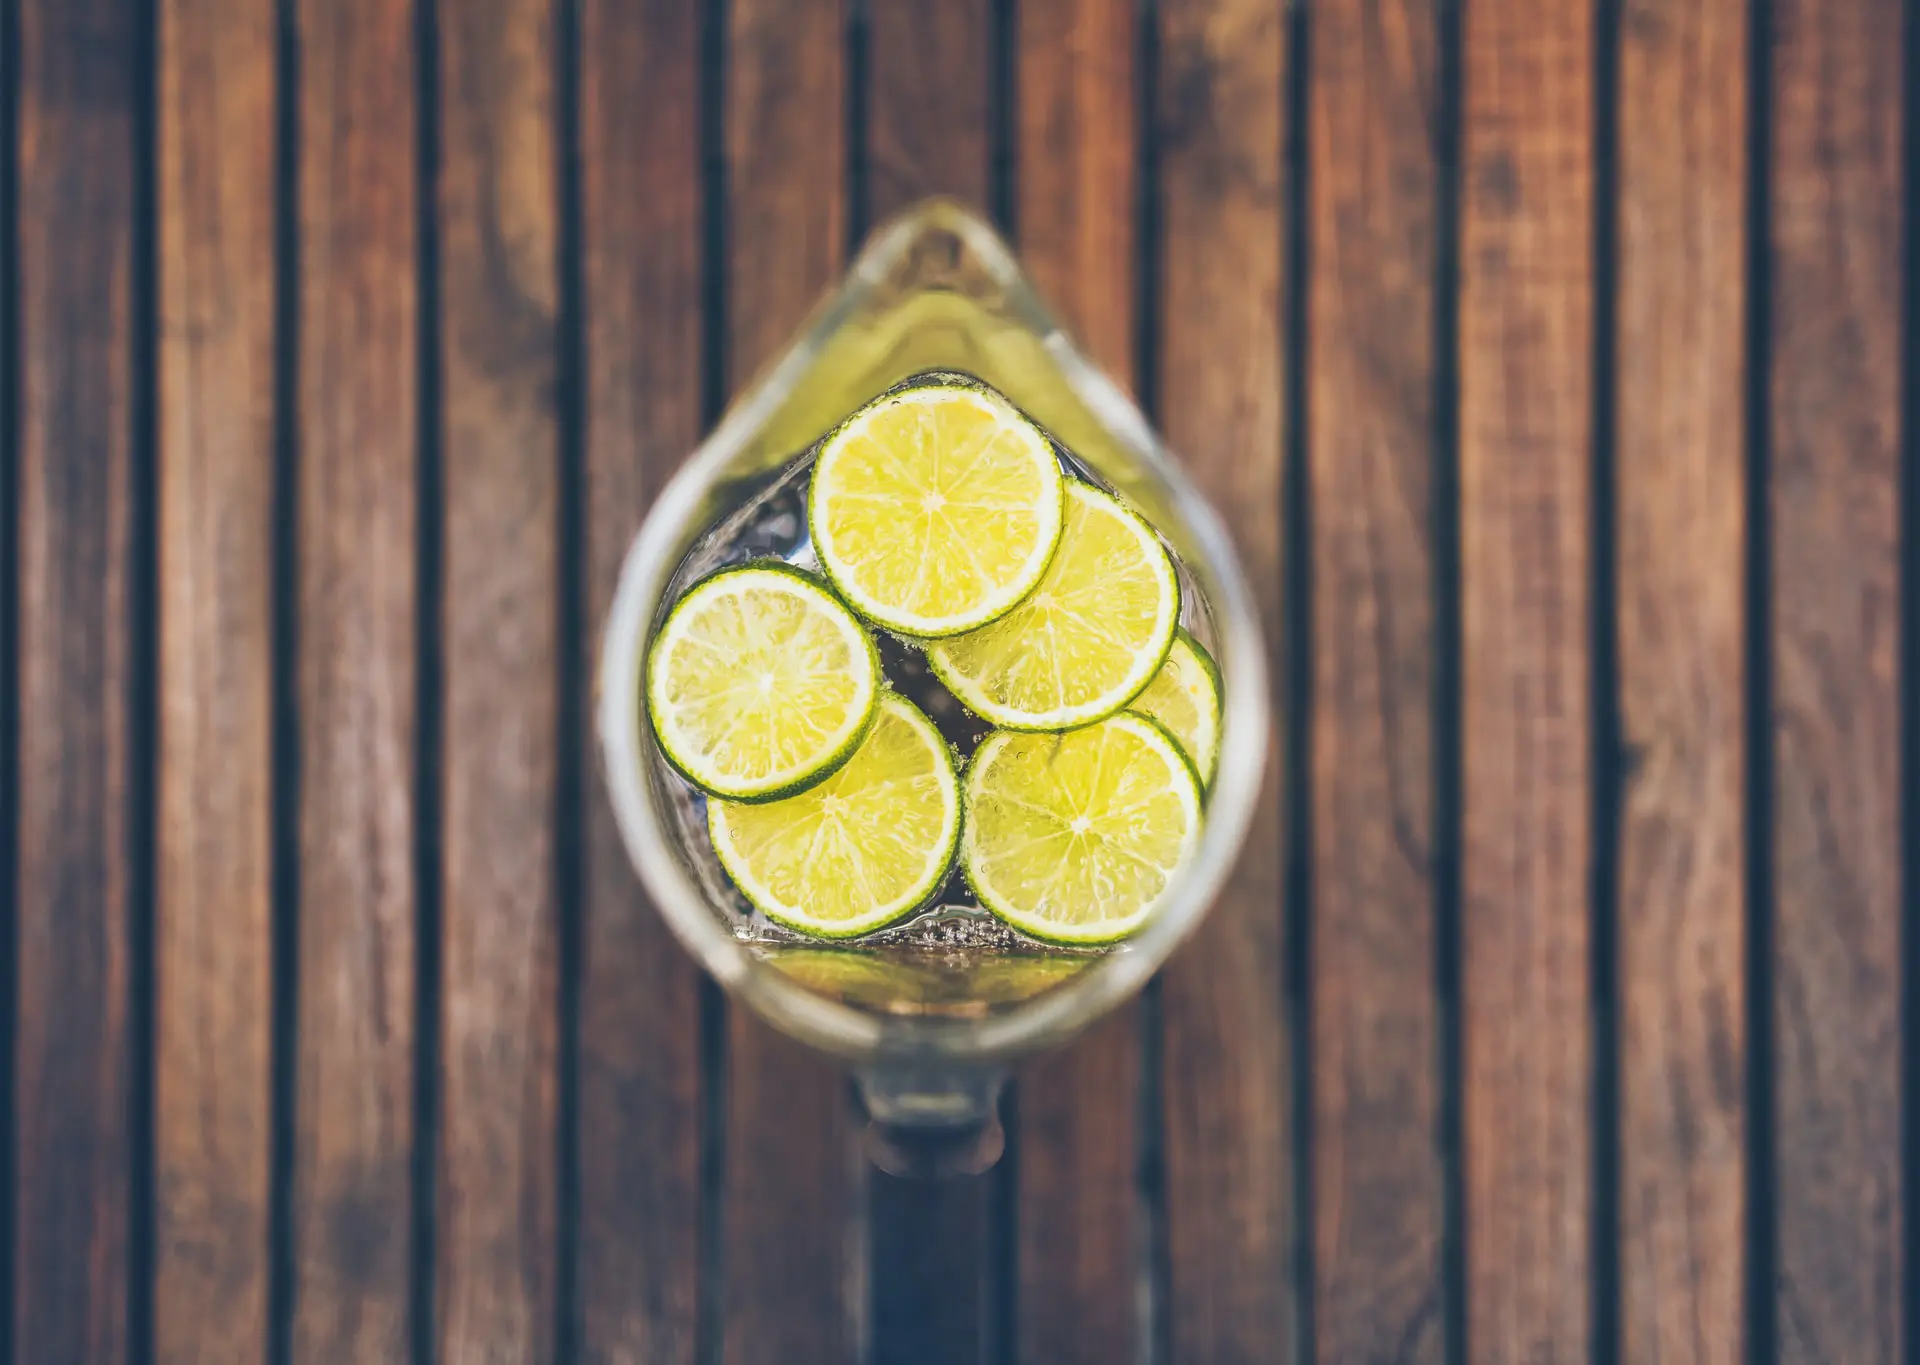 Água com limão: usos e benefícios - eCycle